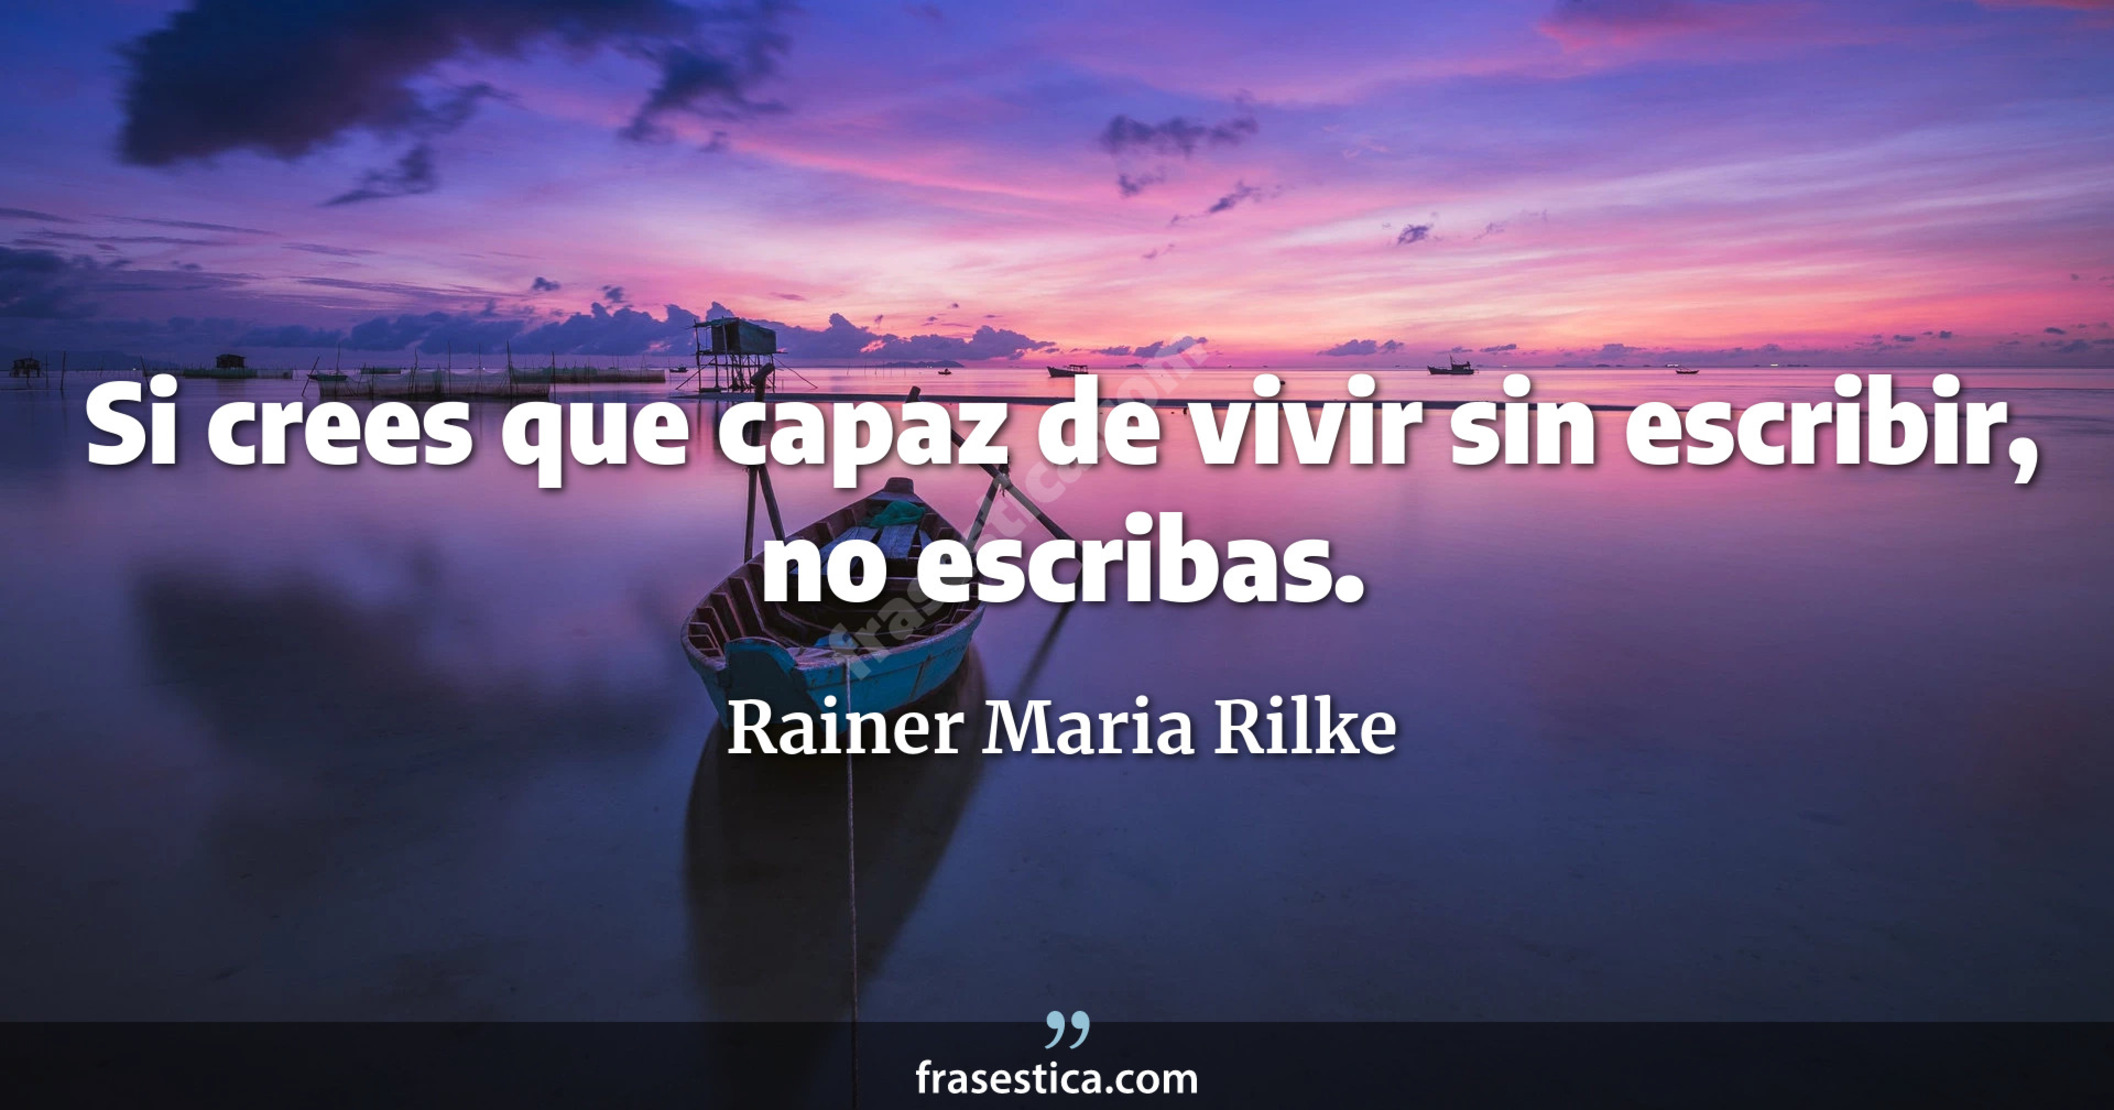 Si crees que capaz de vivir sin escribir, no escribas. - Rainer Maria Rilke